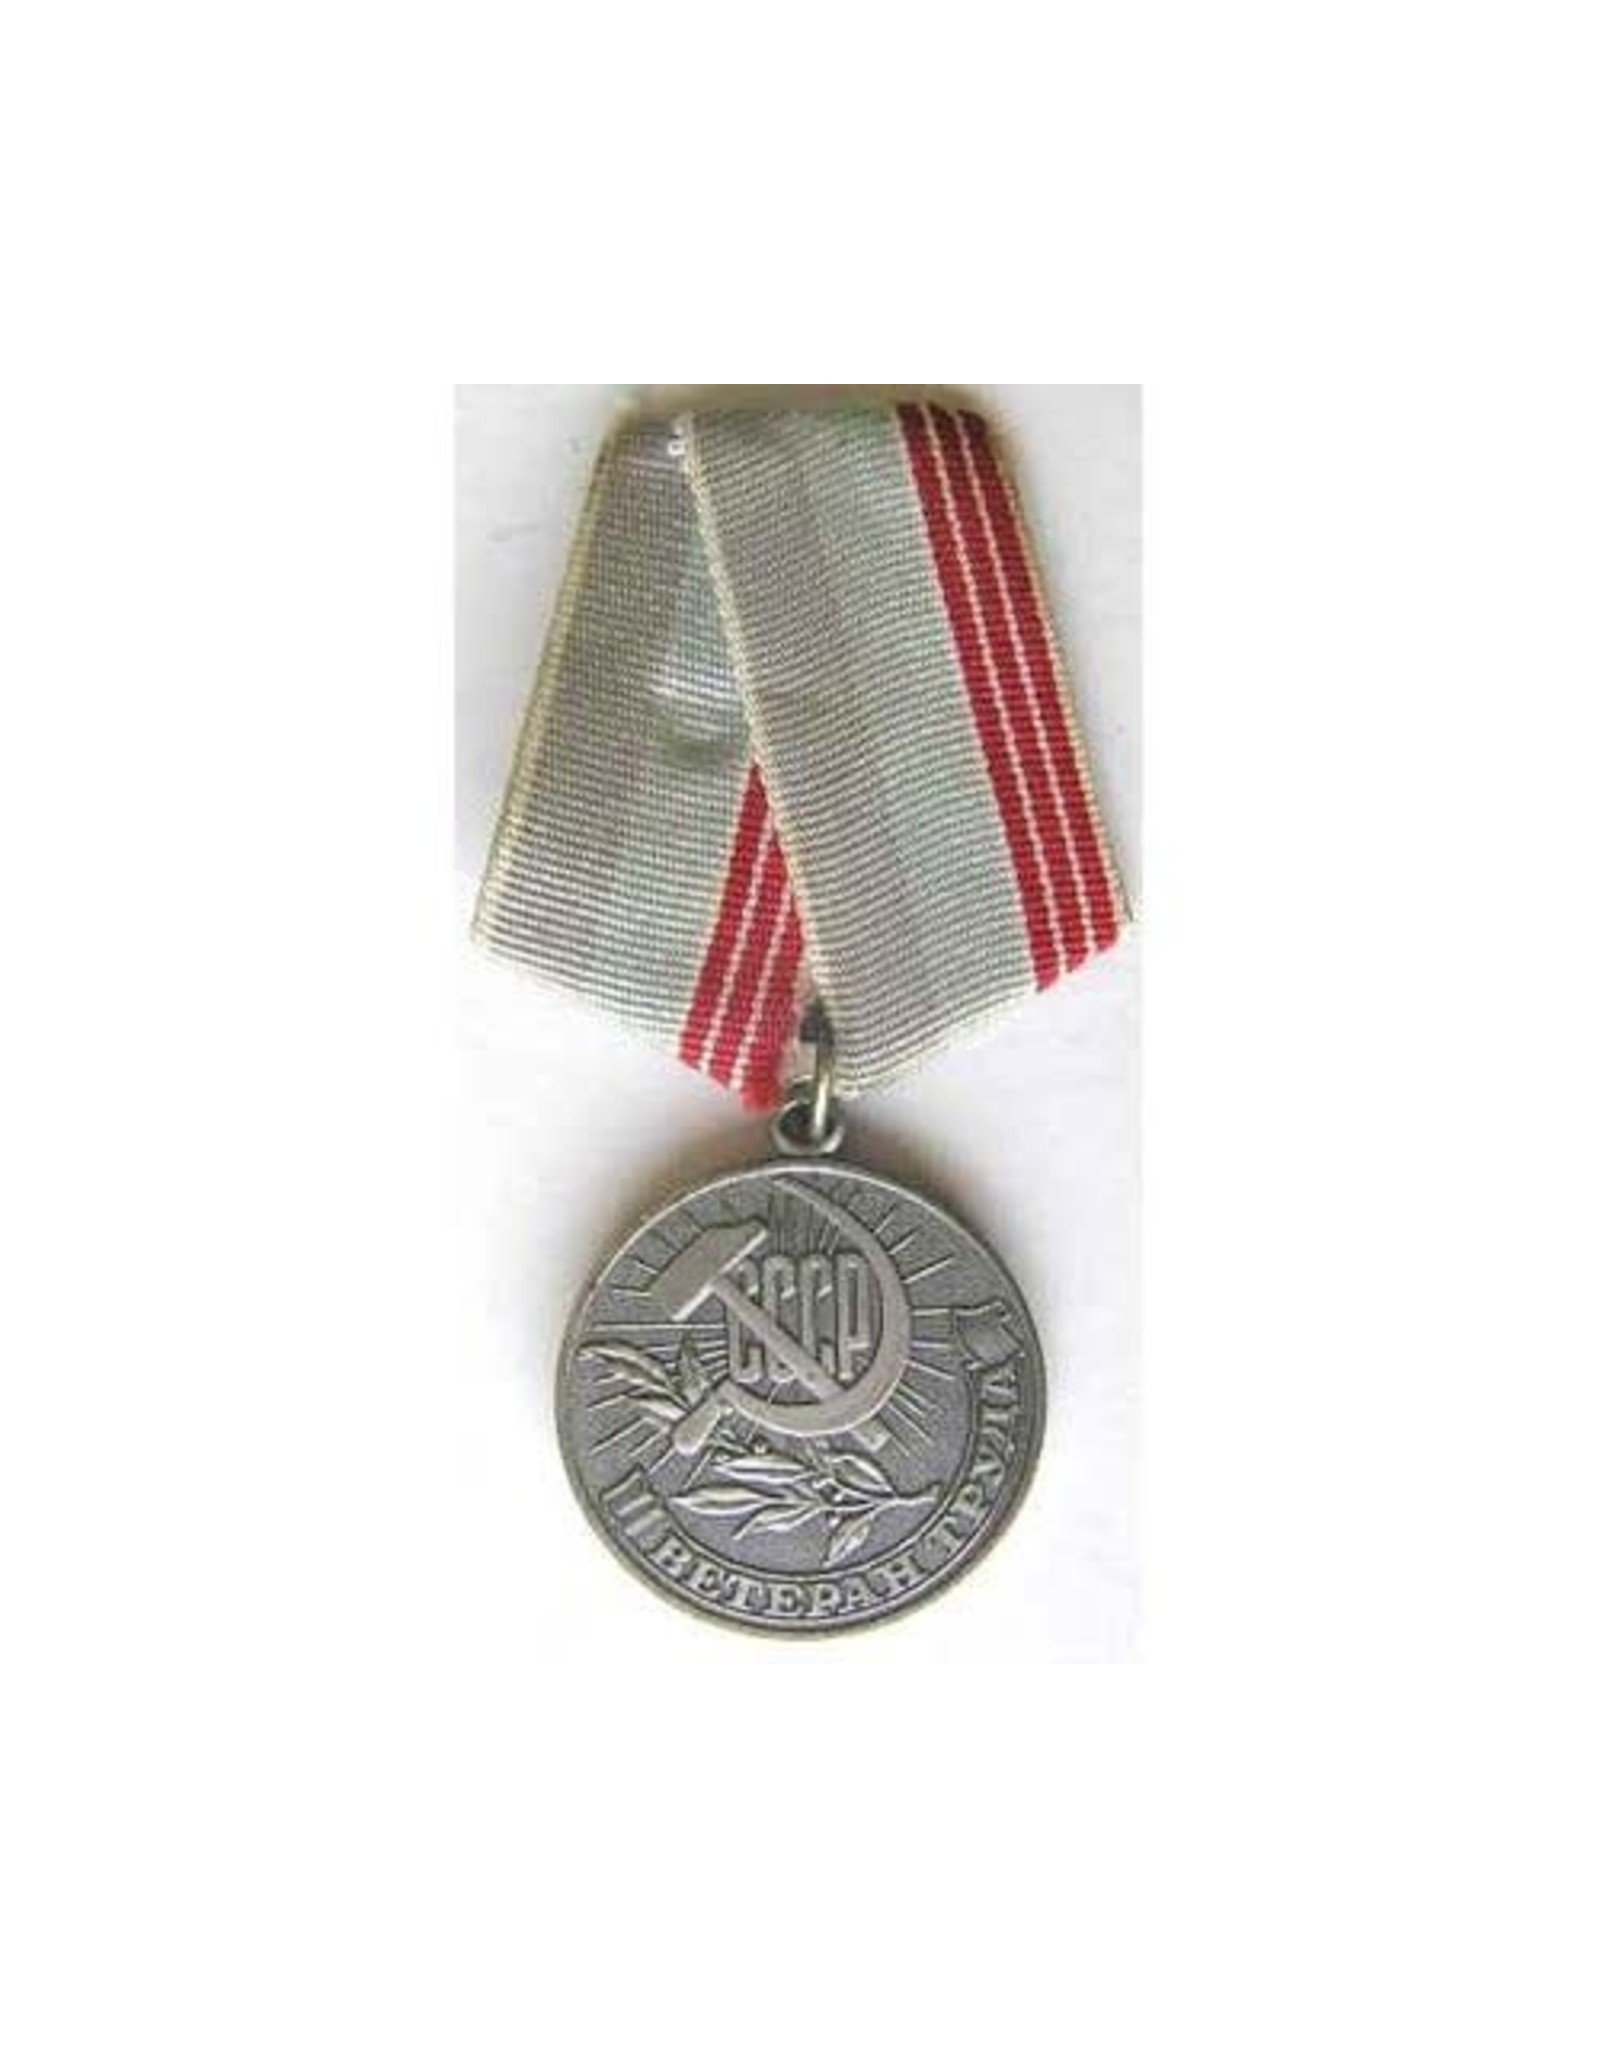 Vintage Soviet Veteran of Labor Medal